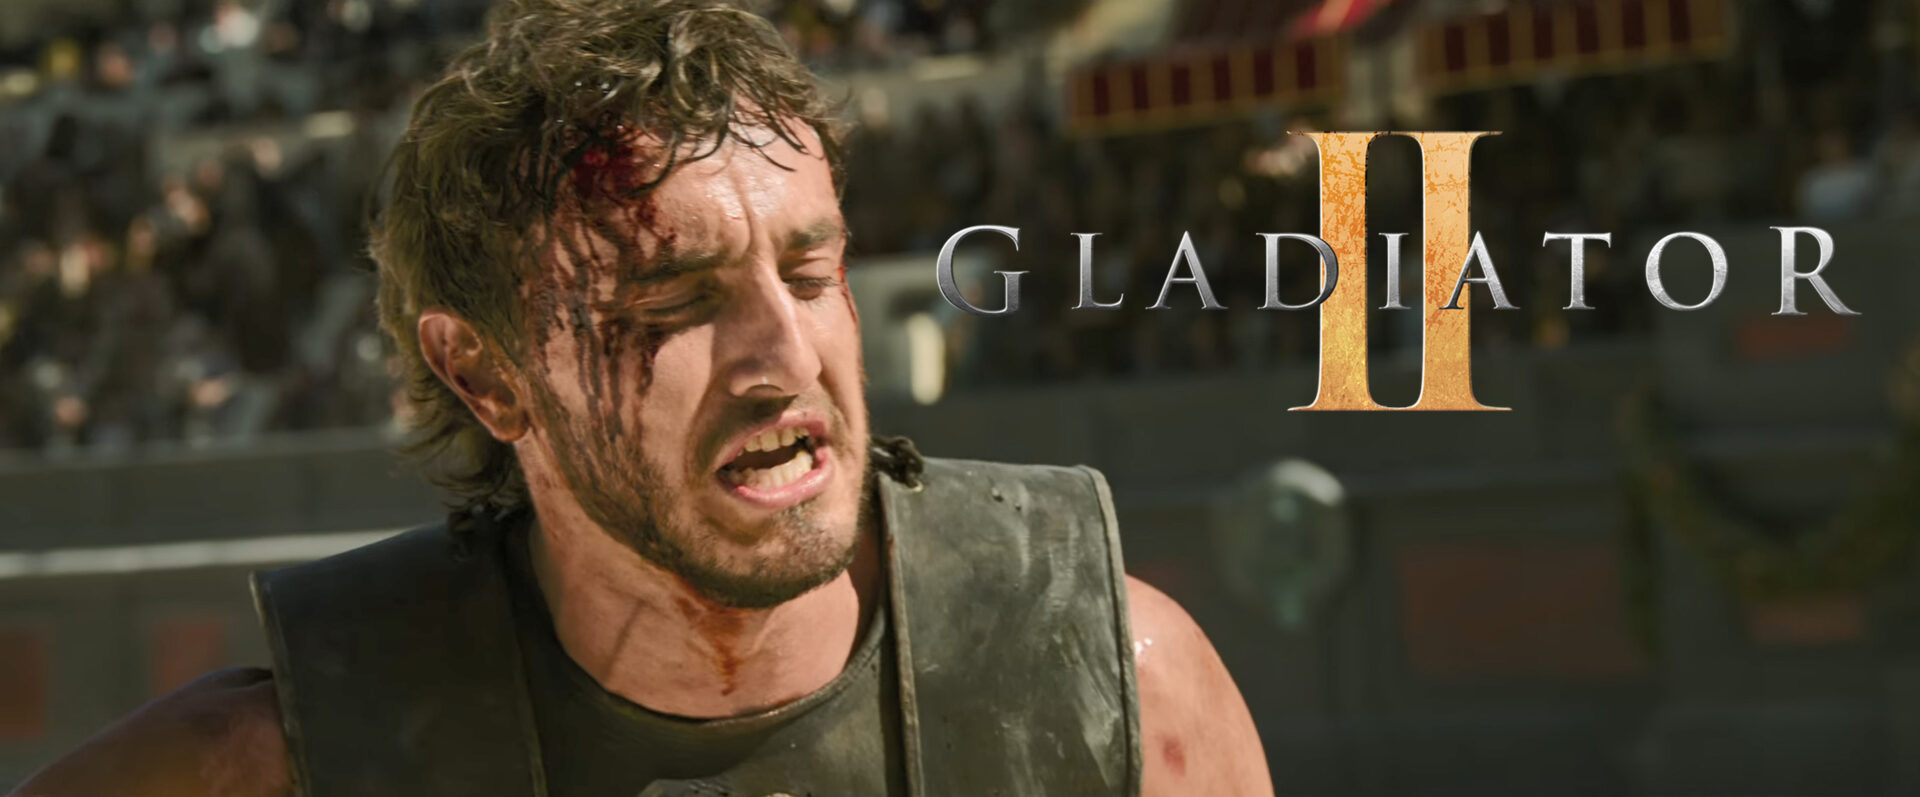 gladiator2 full theatrical trailer banner